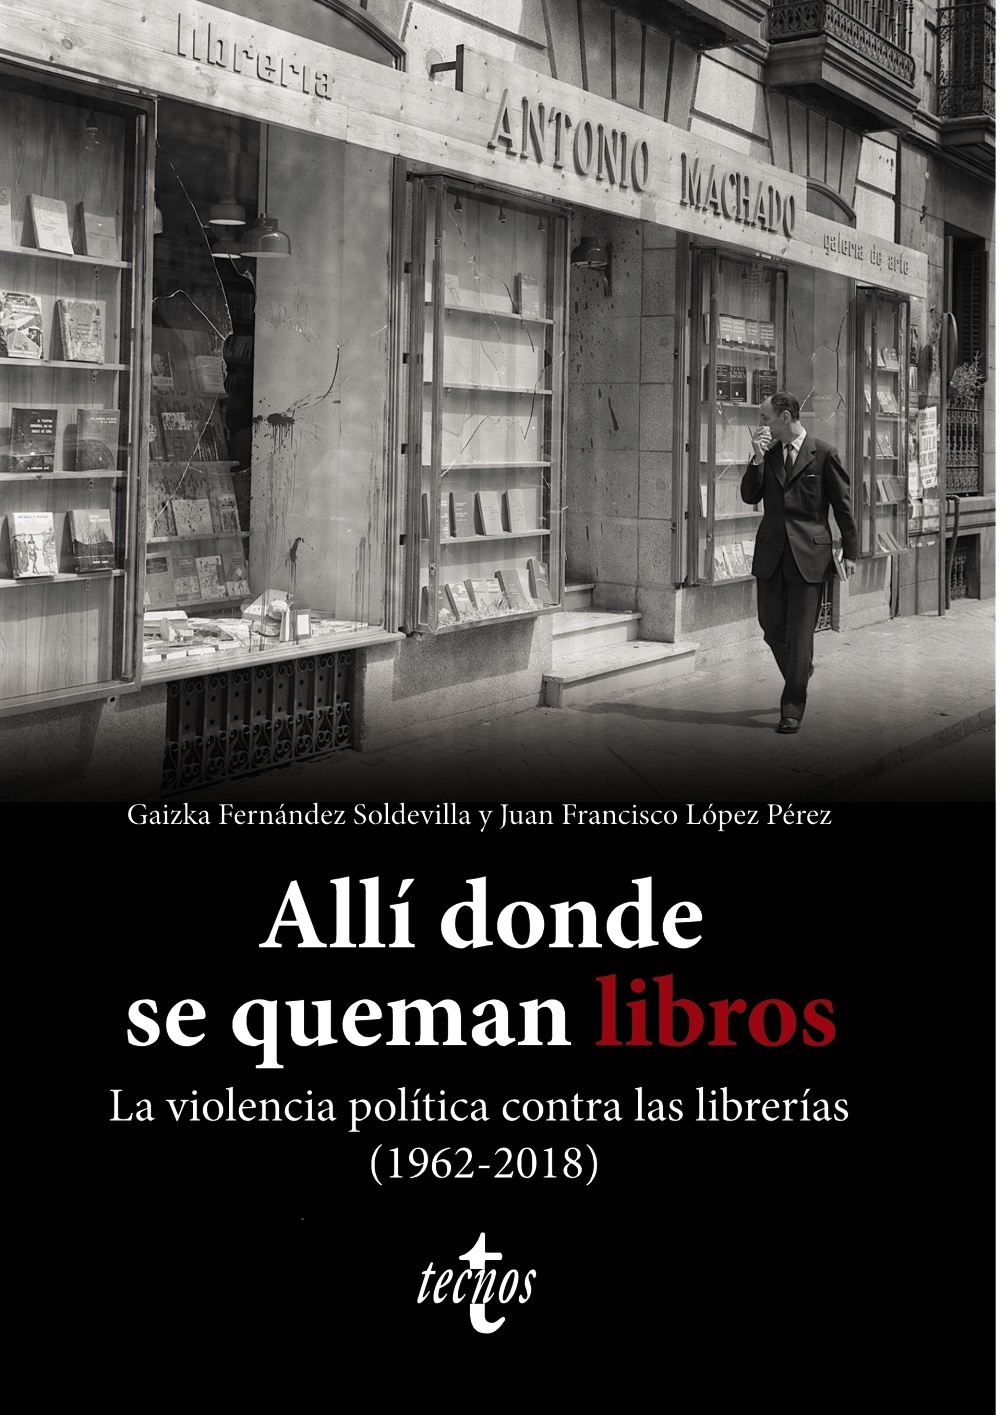 Gaizka Fernández Soldevilla presenta "Allí donde se queman libros"